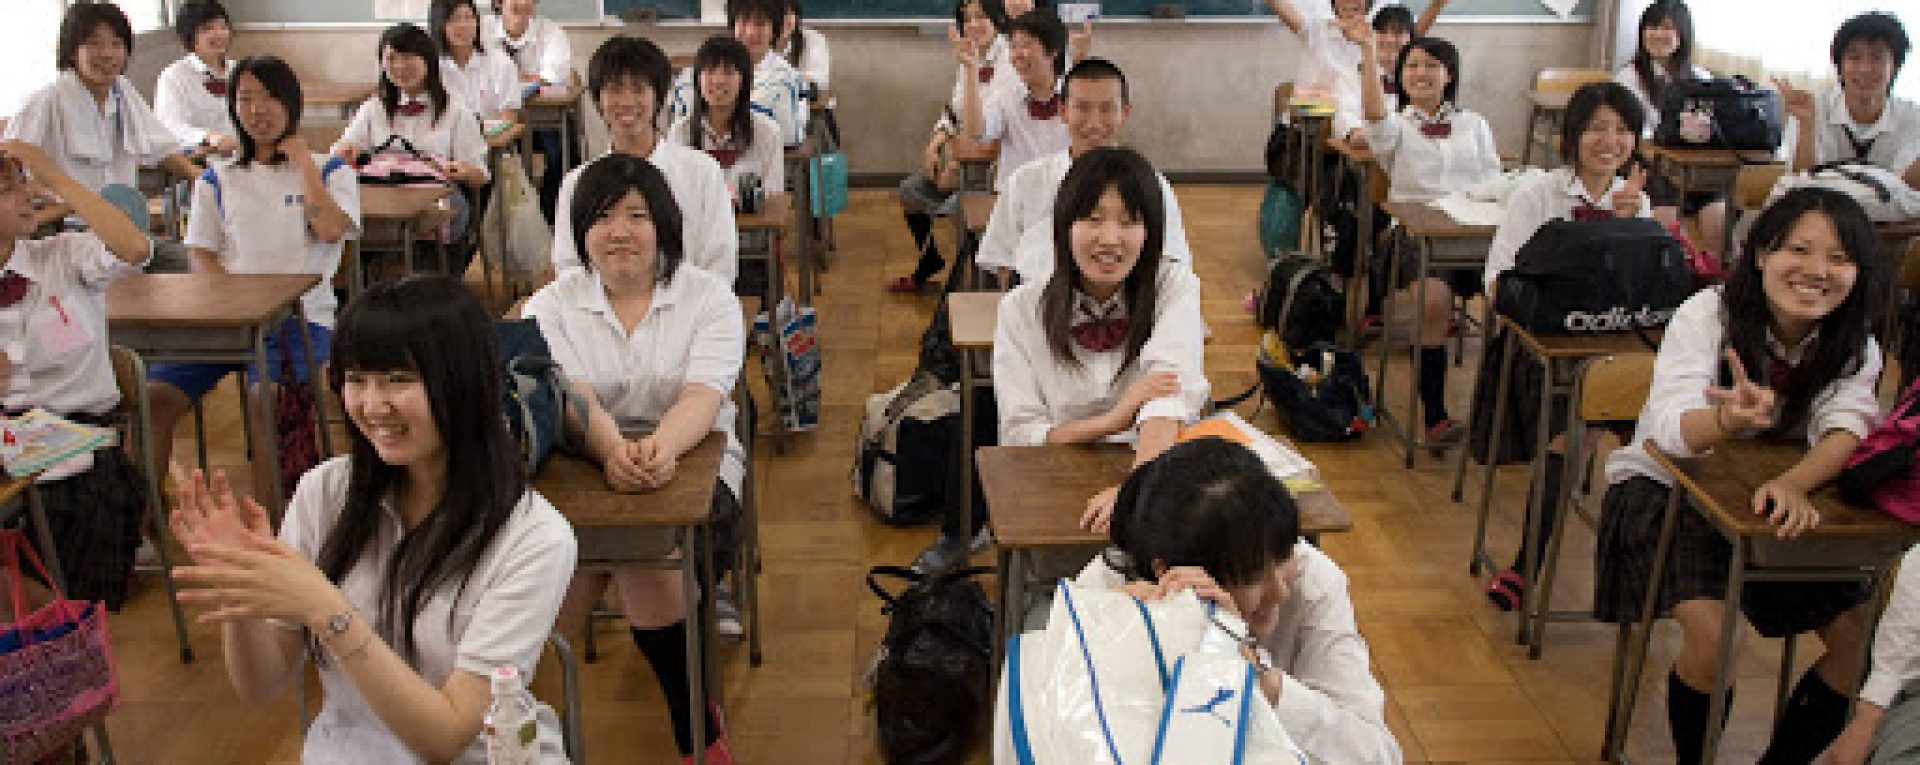 Старшая школа в Японии Возраст